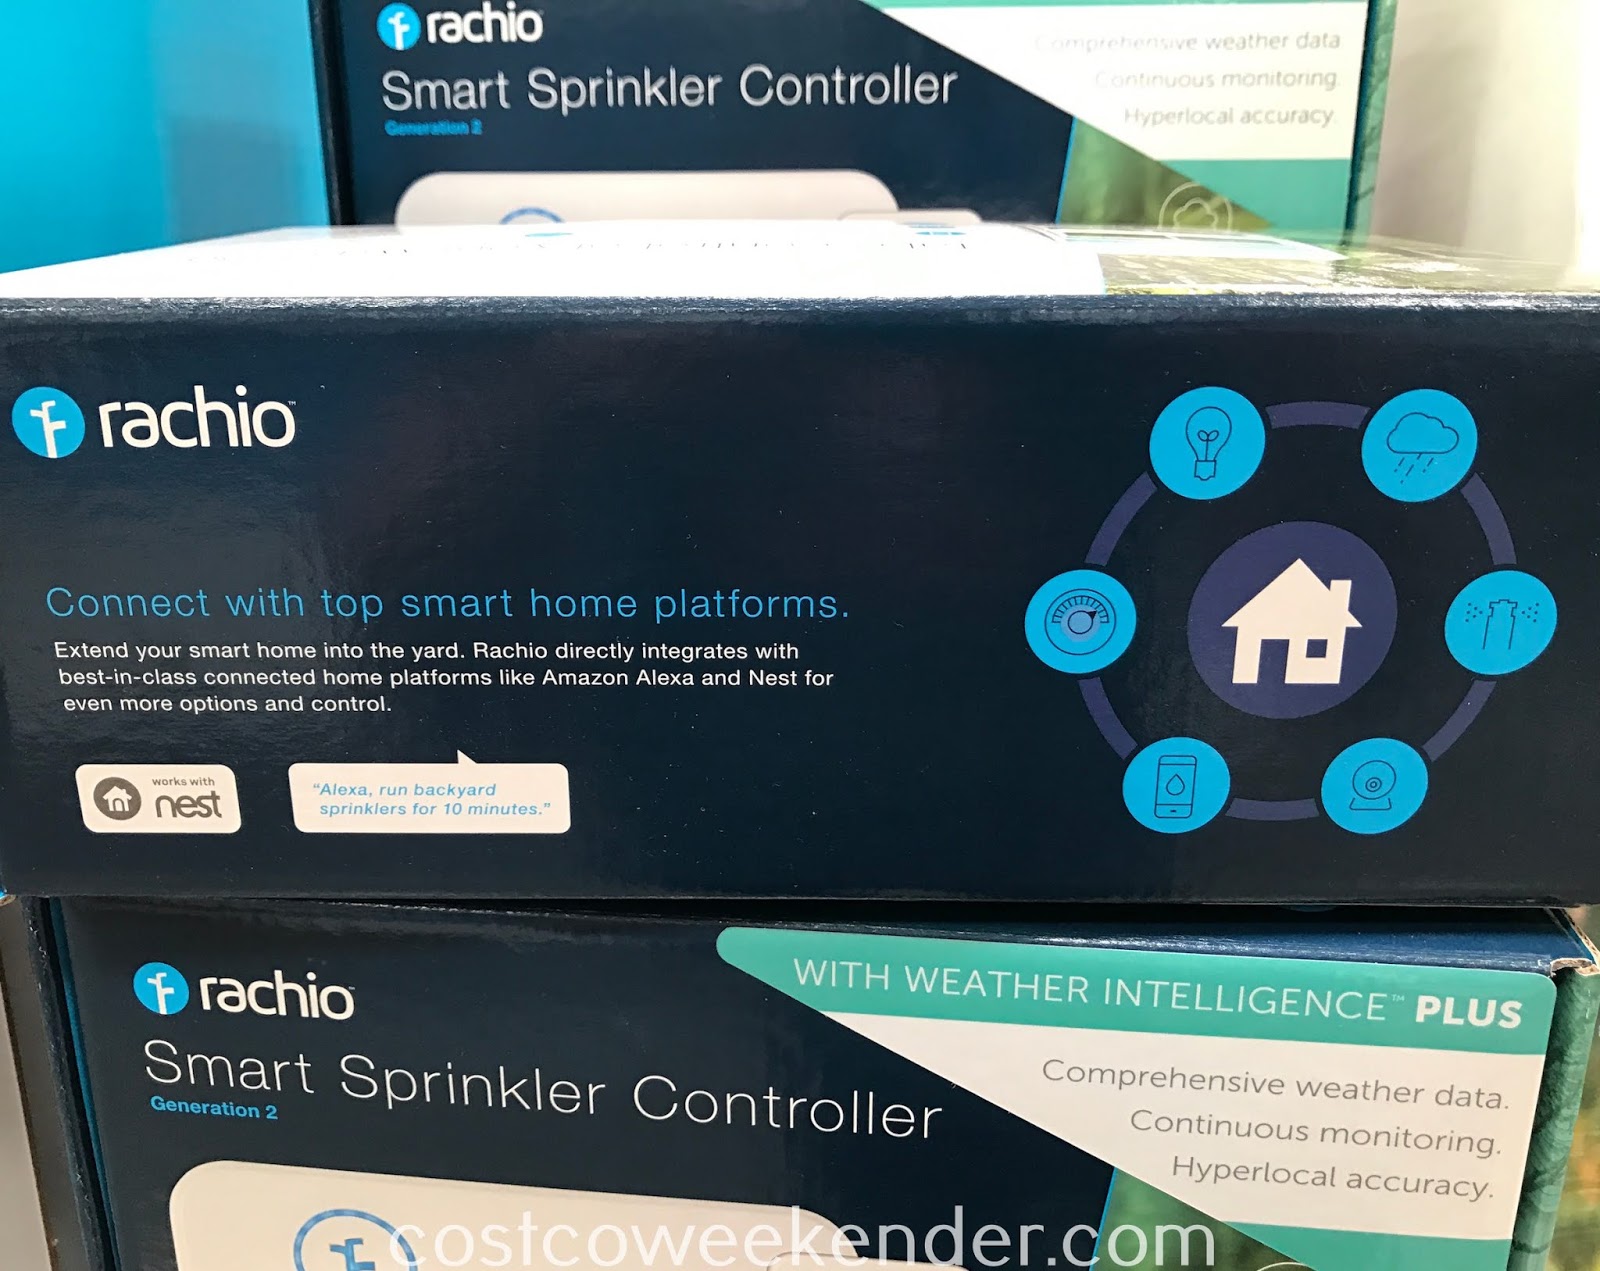 rachio-smart-sprinkler-controller-costco-weekender